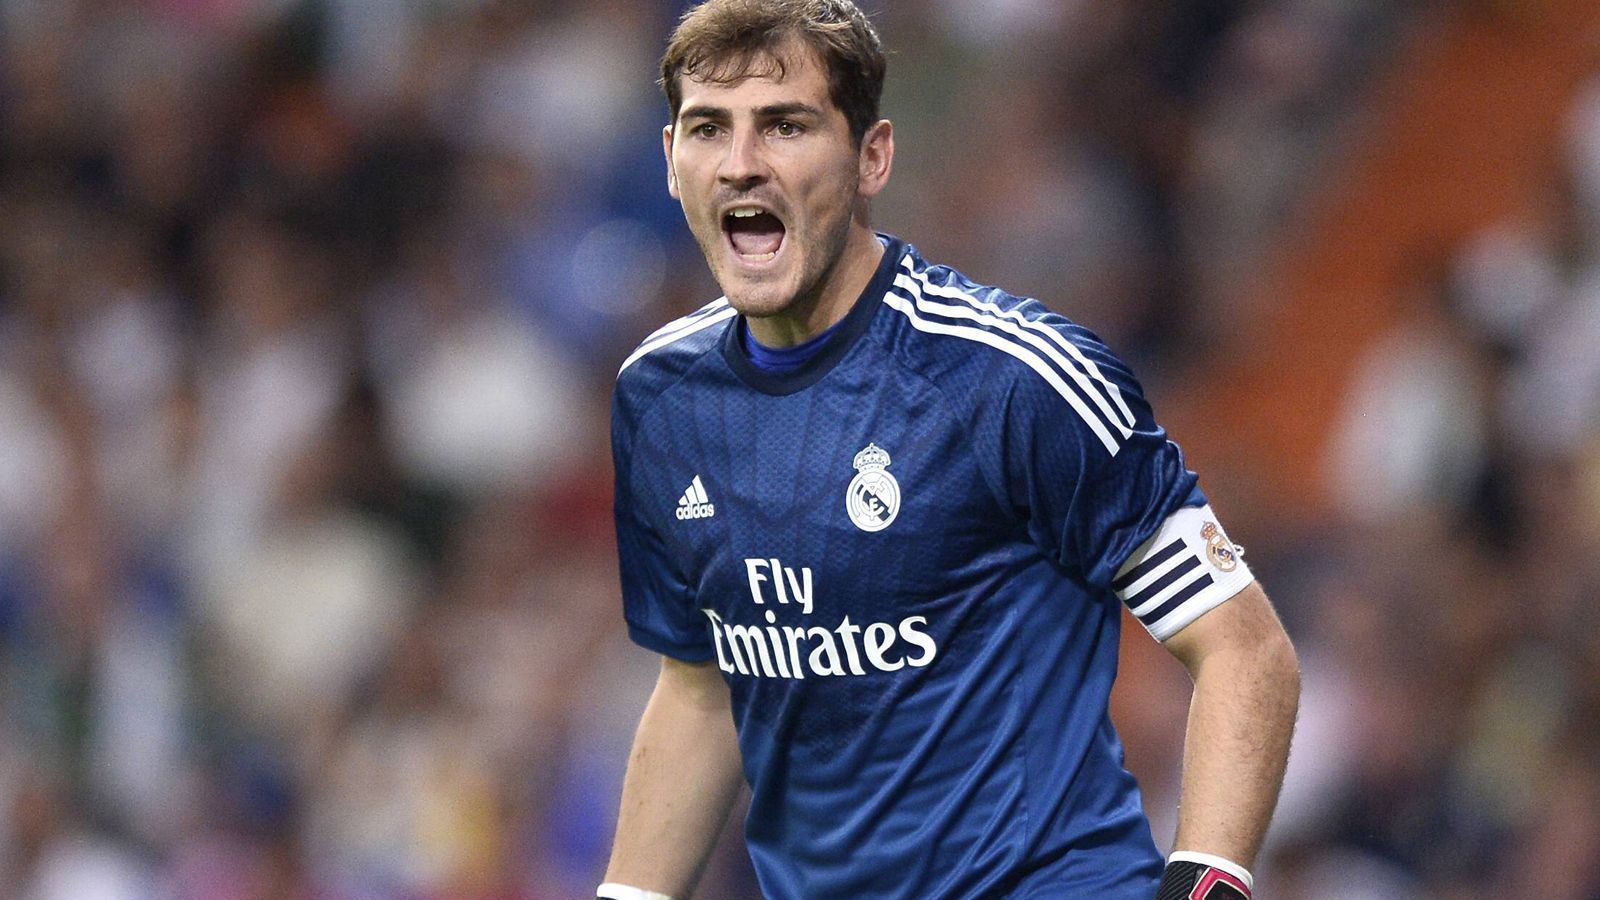 
                <strong>Iker Casillas</strong><br>
                Seit er acht Jahre alt war, spielte Iker Casillas bei Real Madrid. Zuerst in der Jugend, danach stand er für 15 Jahre im Kasten des Profiteams, ehe er zum FC Porto ging. Ohne Frage ist "San Iker" der beste Keeper, der je das Tor der Königlichen hütete.
              